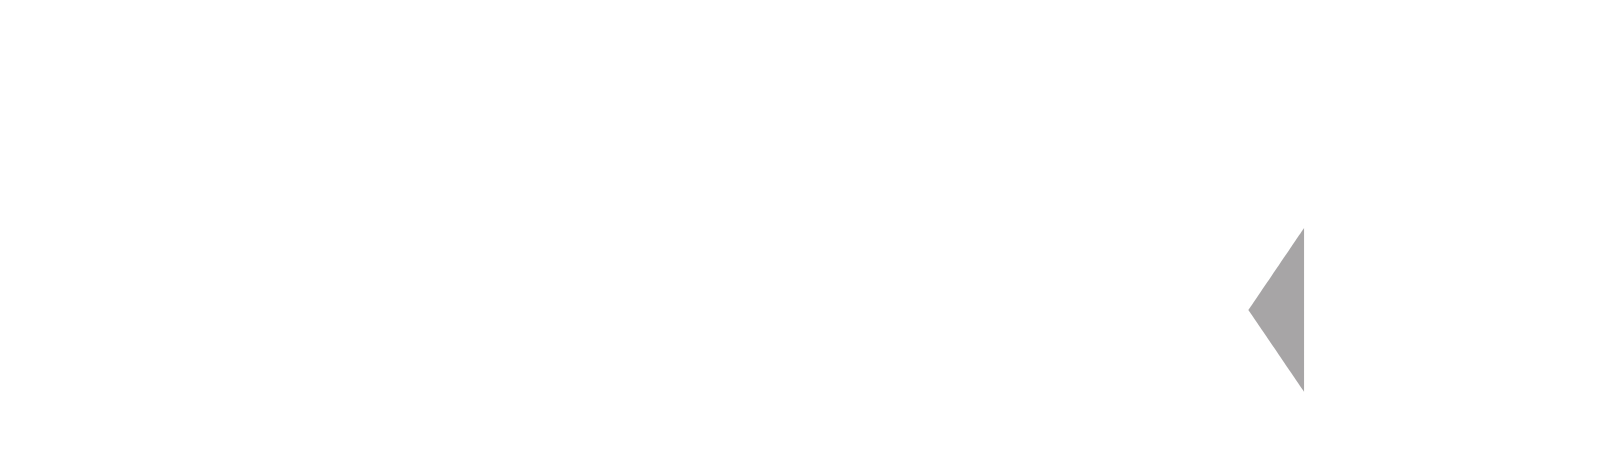 WEX Logo groß für dunkle Hintergründe (transparentes PNG)